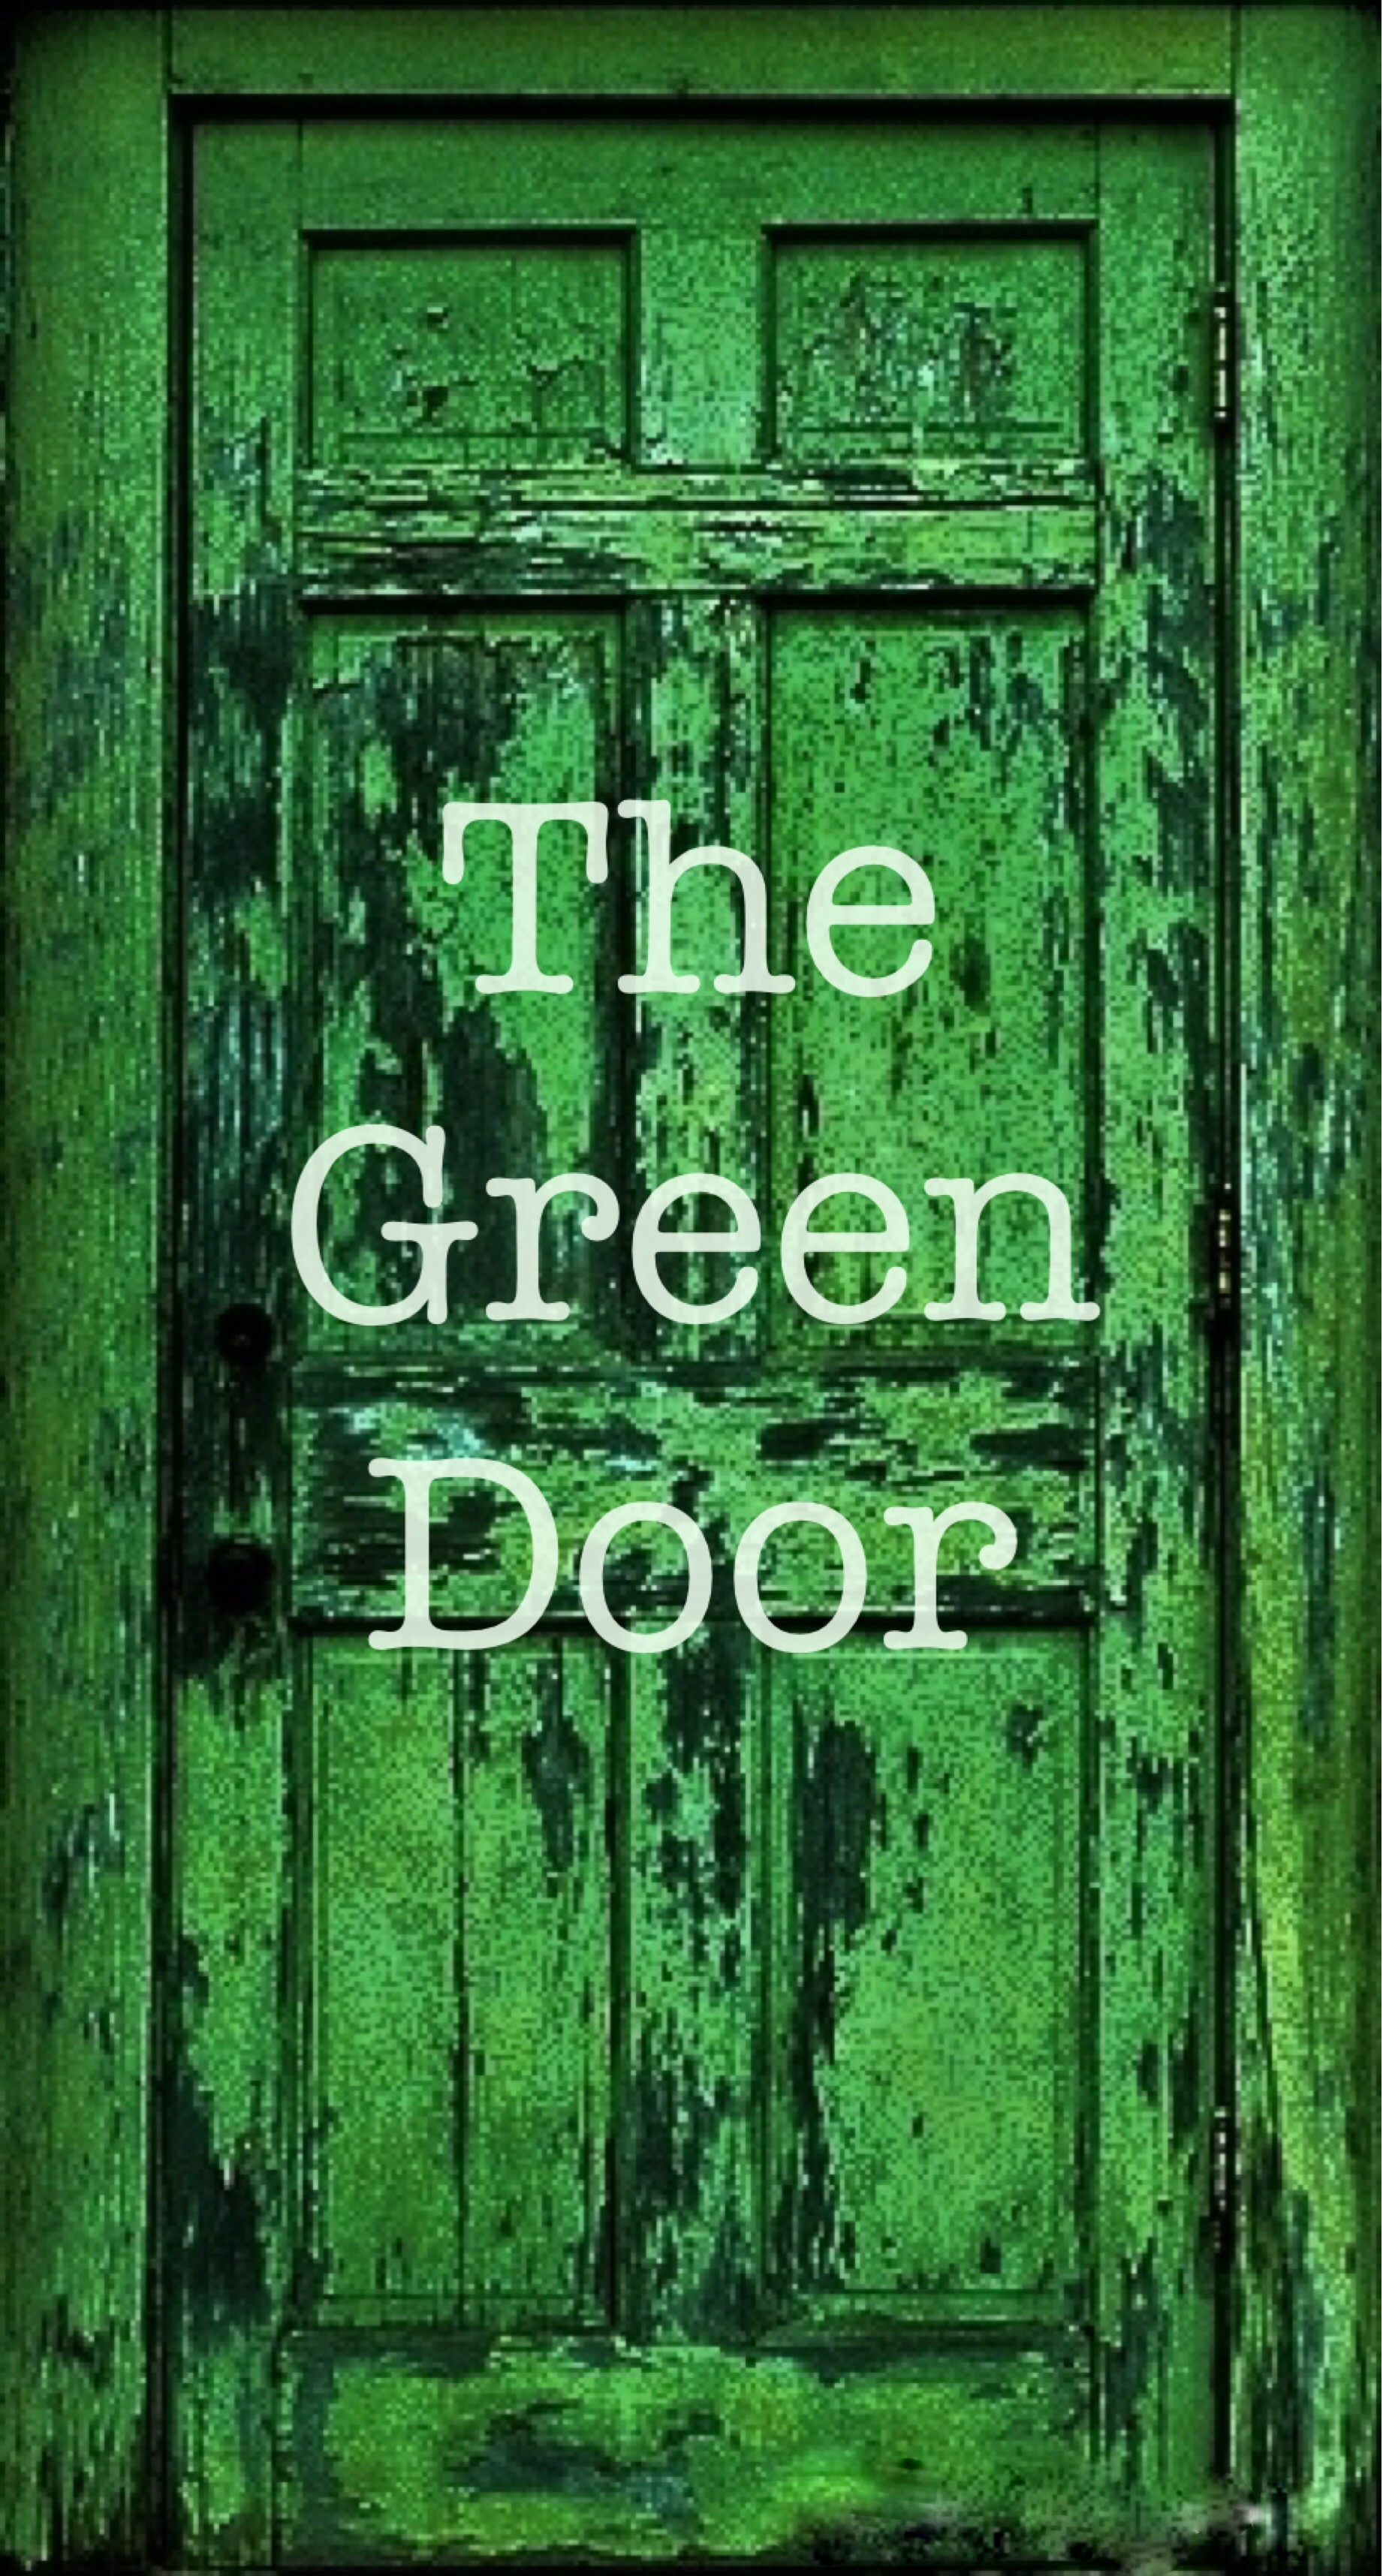 behind the green door torrent